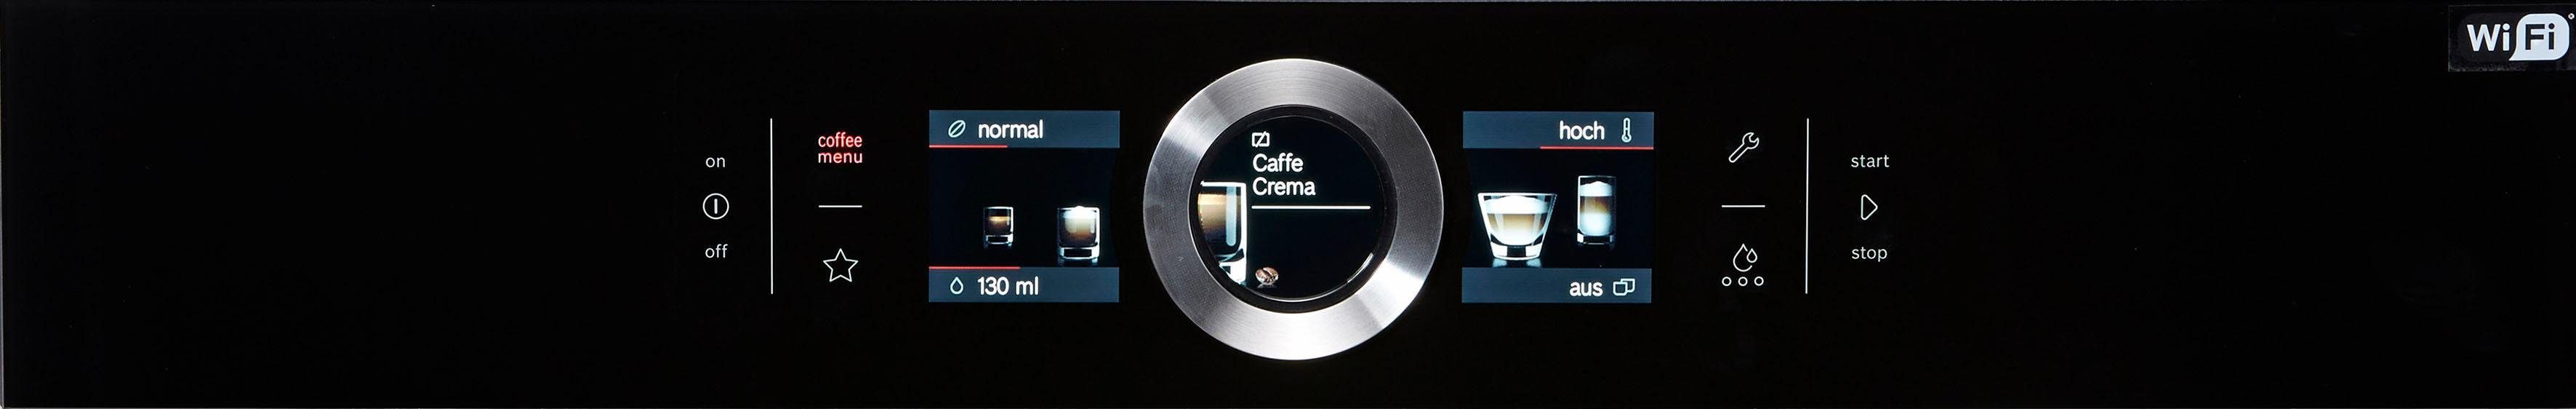 CTL636EB6 Einbau-Kaffeevollautomat BOSCH